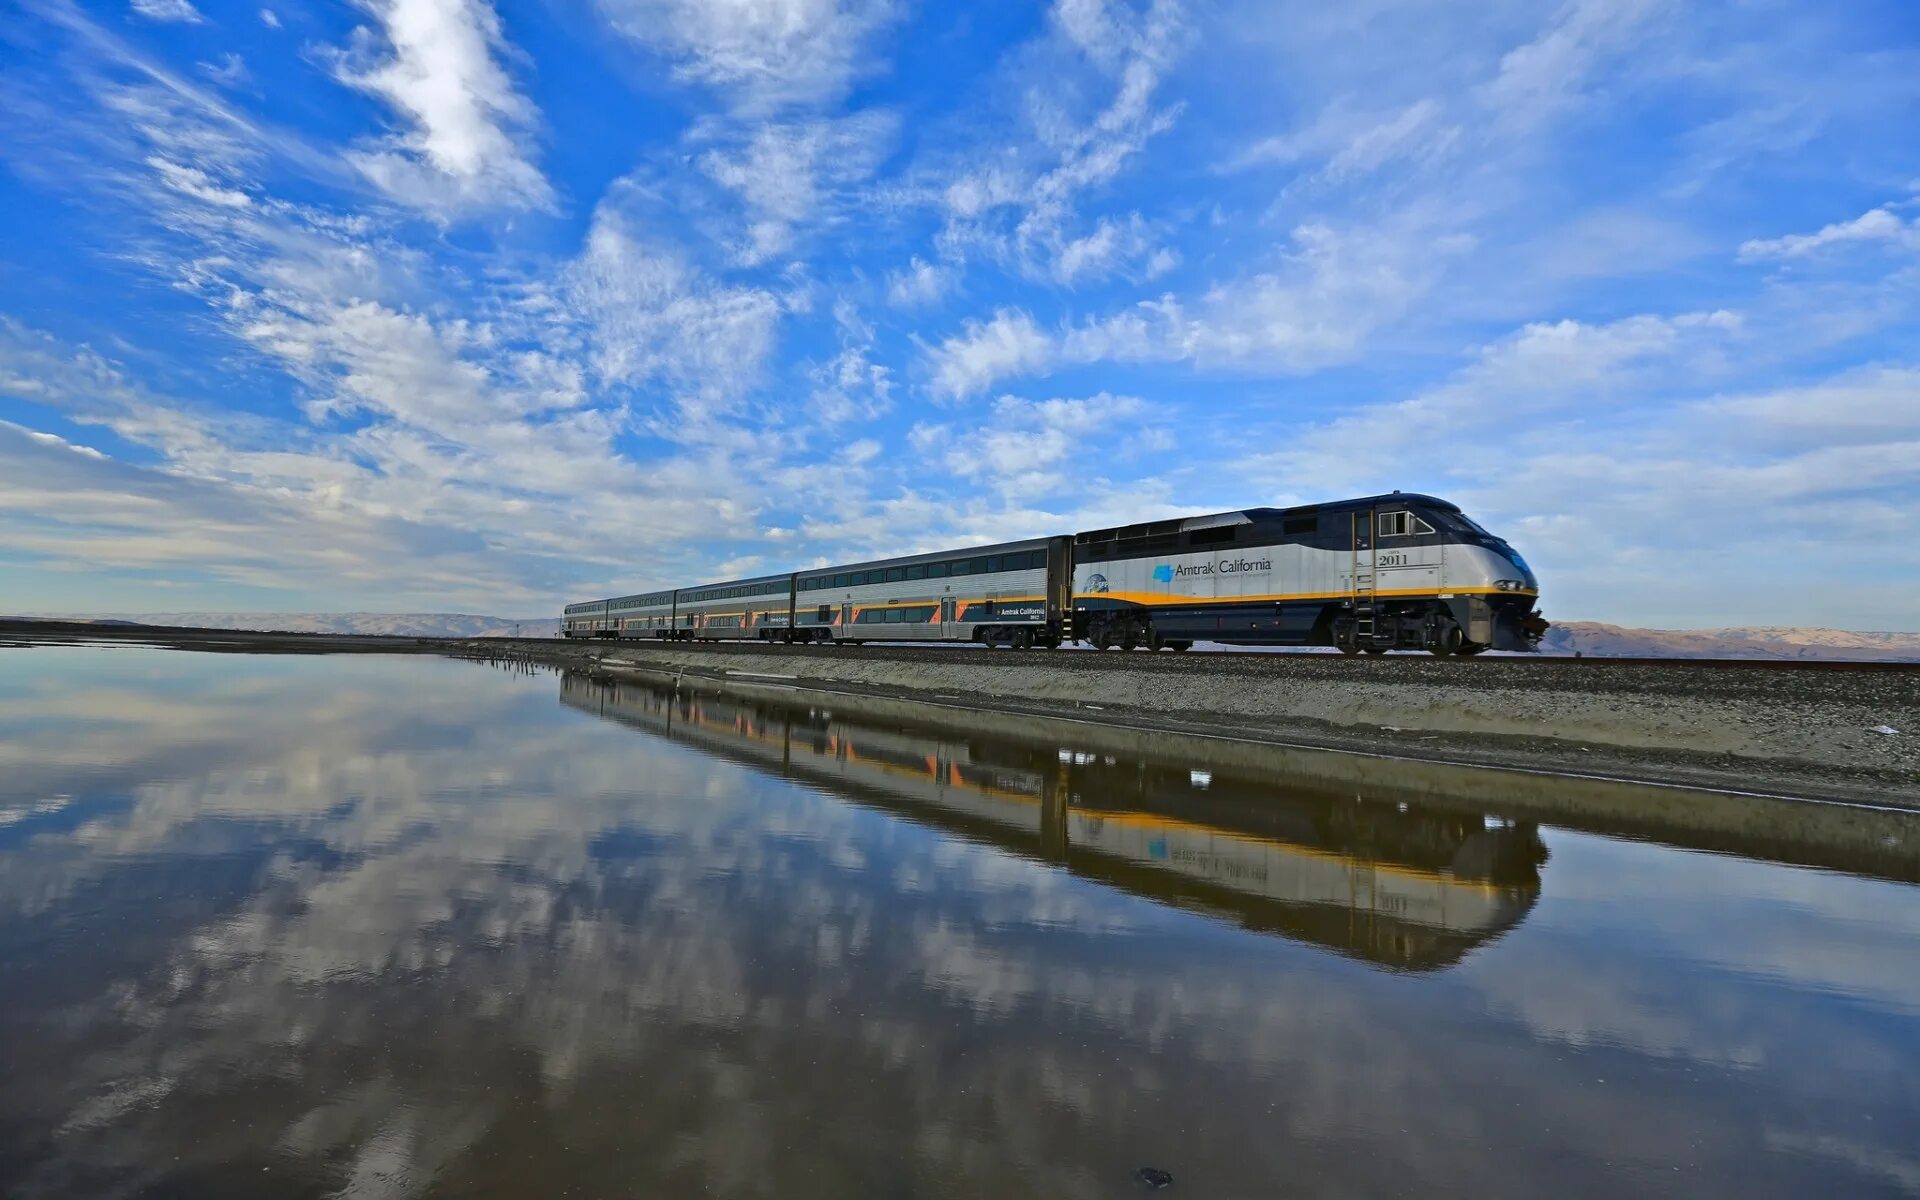 Поезд Amtrak California. Красивый поезд. Красивые фото поездов. Железная дорога на воде.